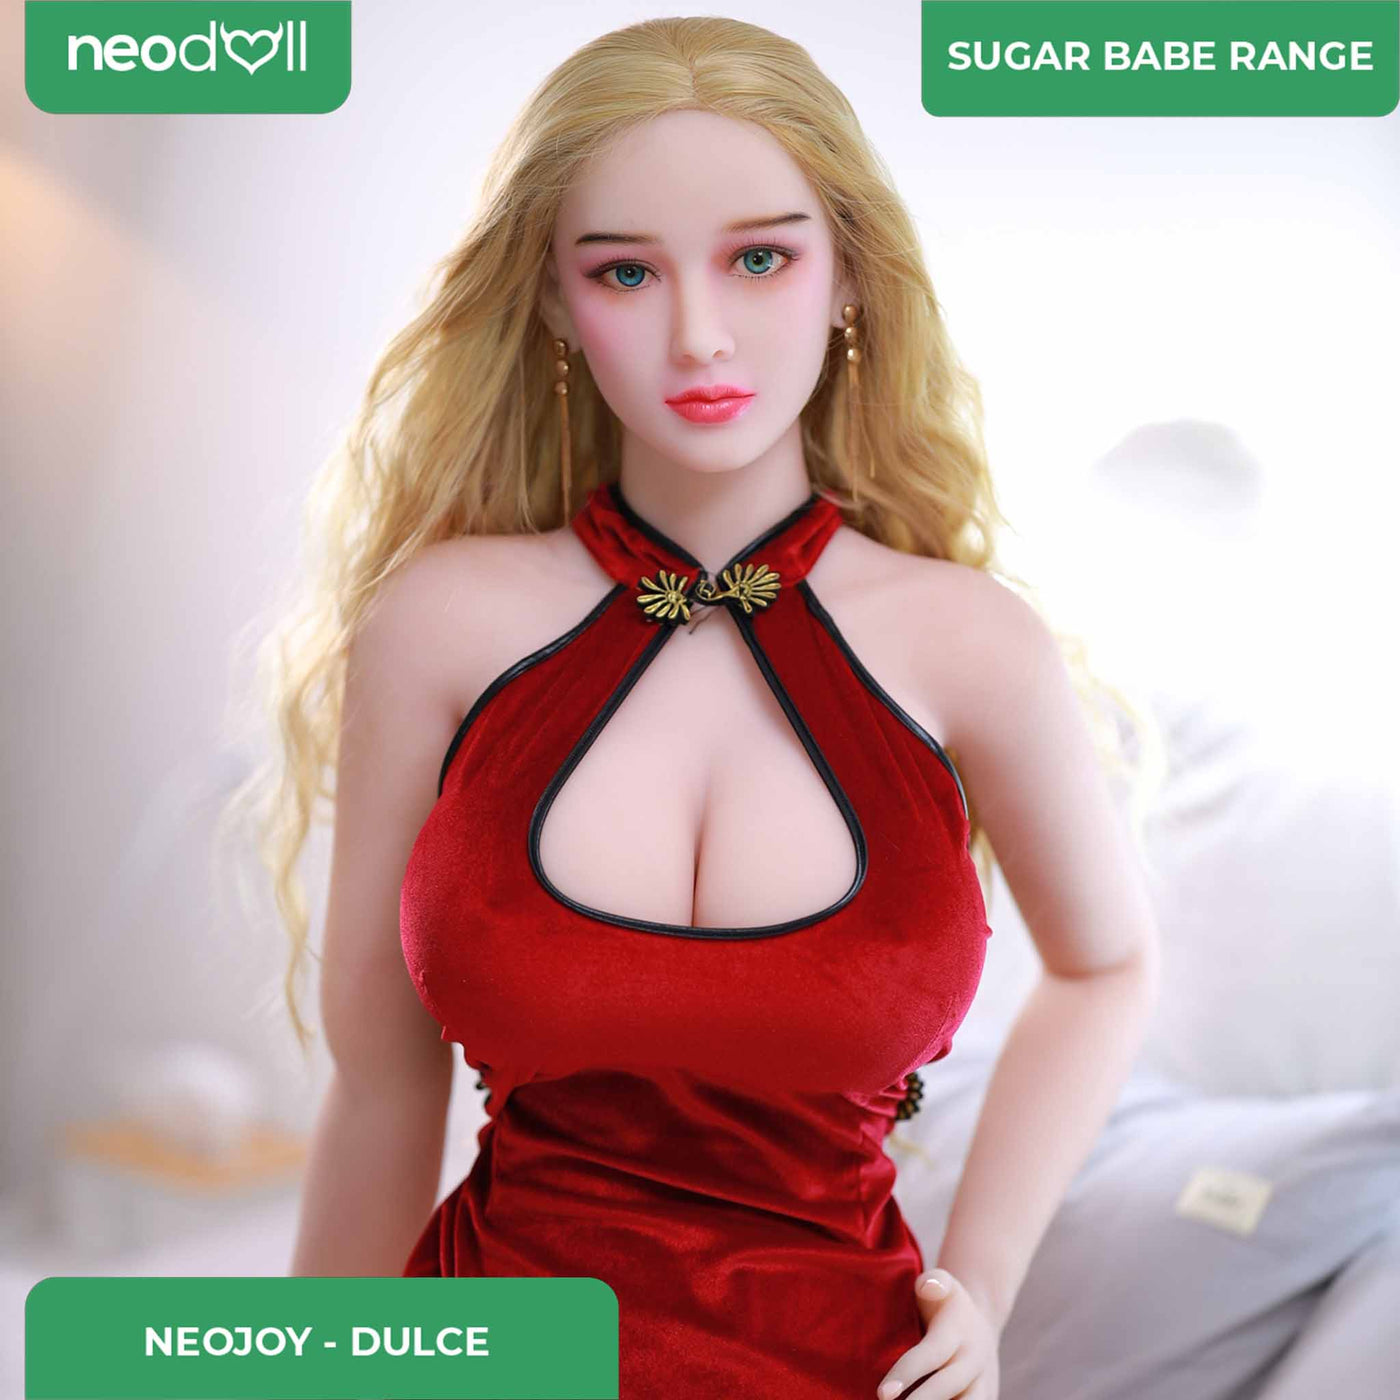 Neodoll Sugar Babe - Dulce - Realistic Sex Doll - 164cm - Silicone Color